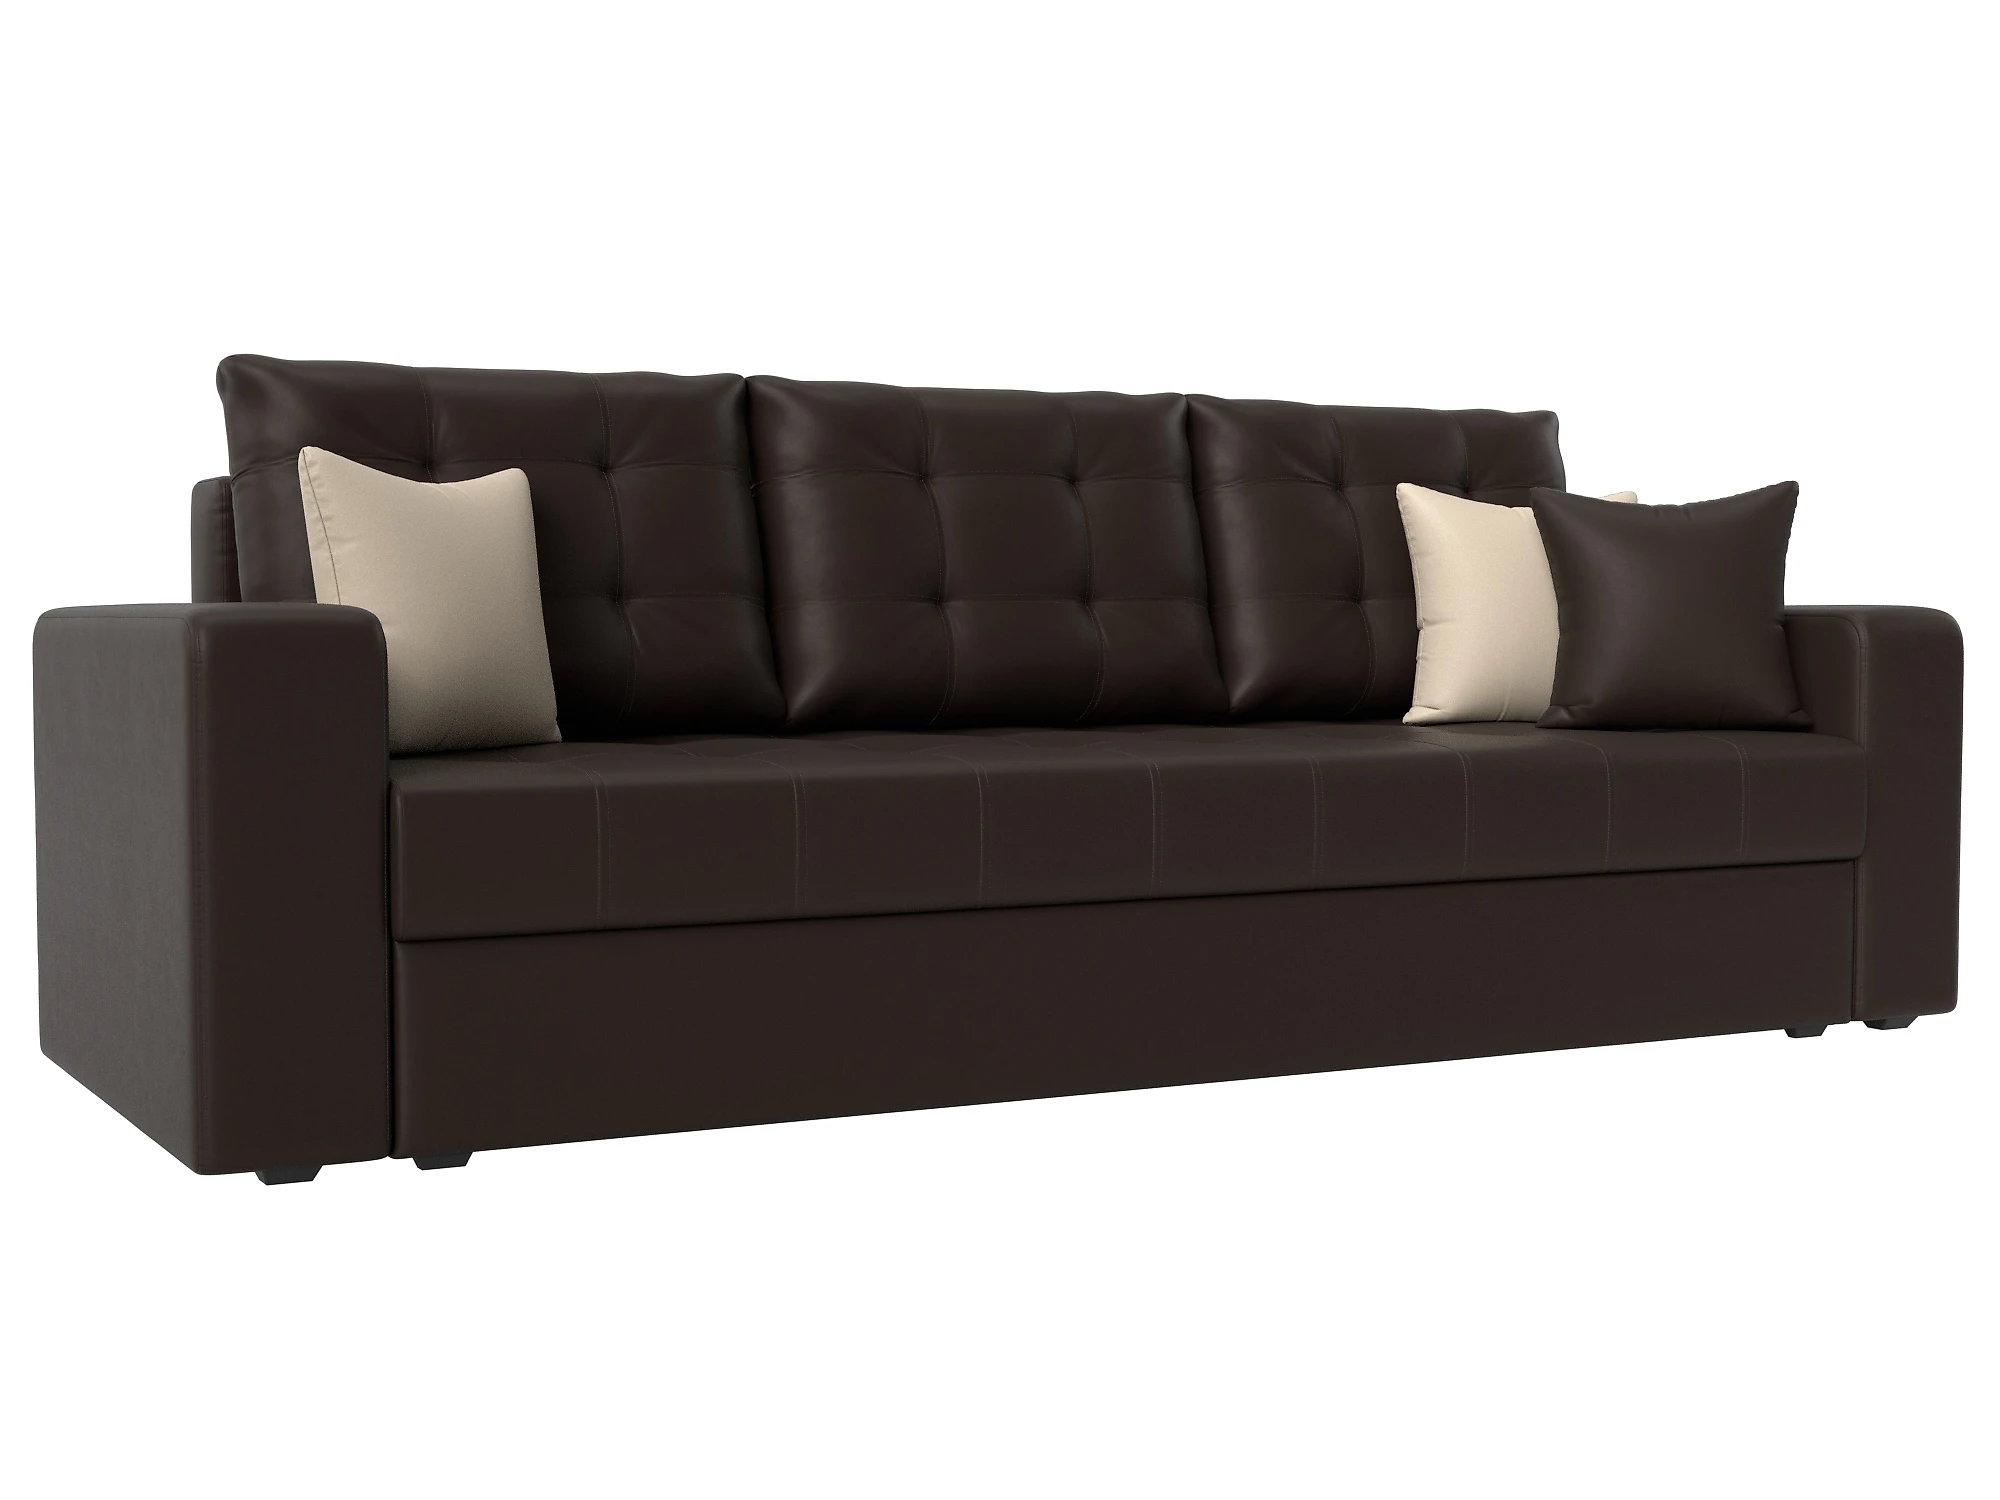  кожаный диван еврокнижка Ливерпуль Дизайн 8